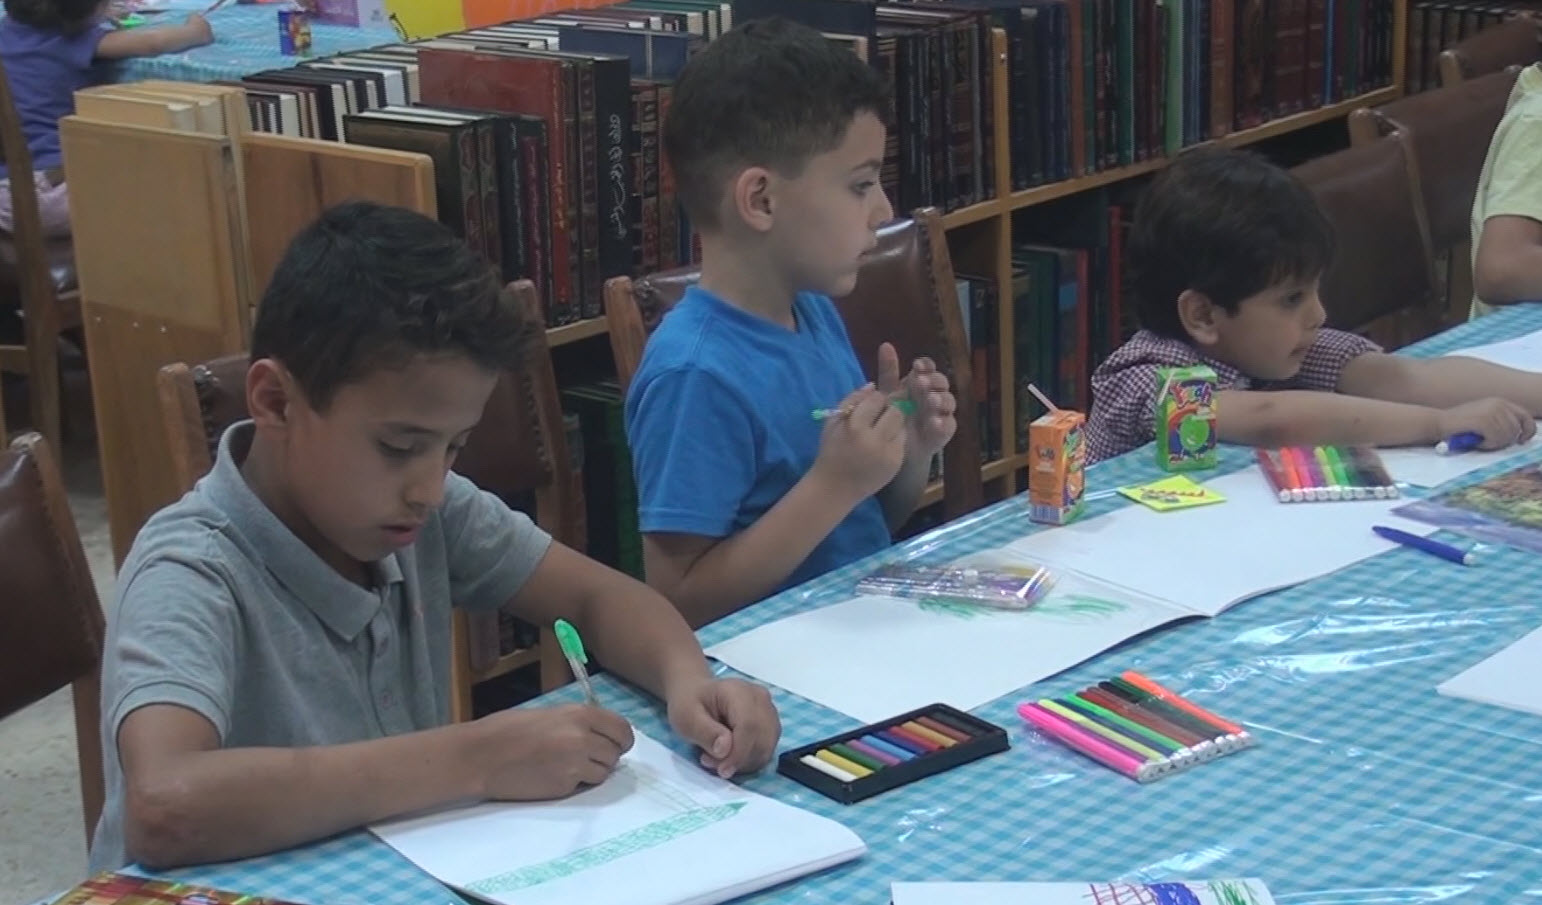 مجمع اللغة يطلق مبادرة مكتبة الأطفال.. تقرير تلفزيوني